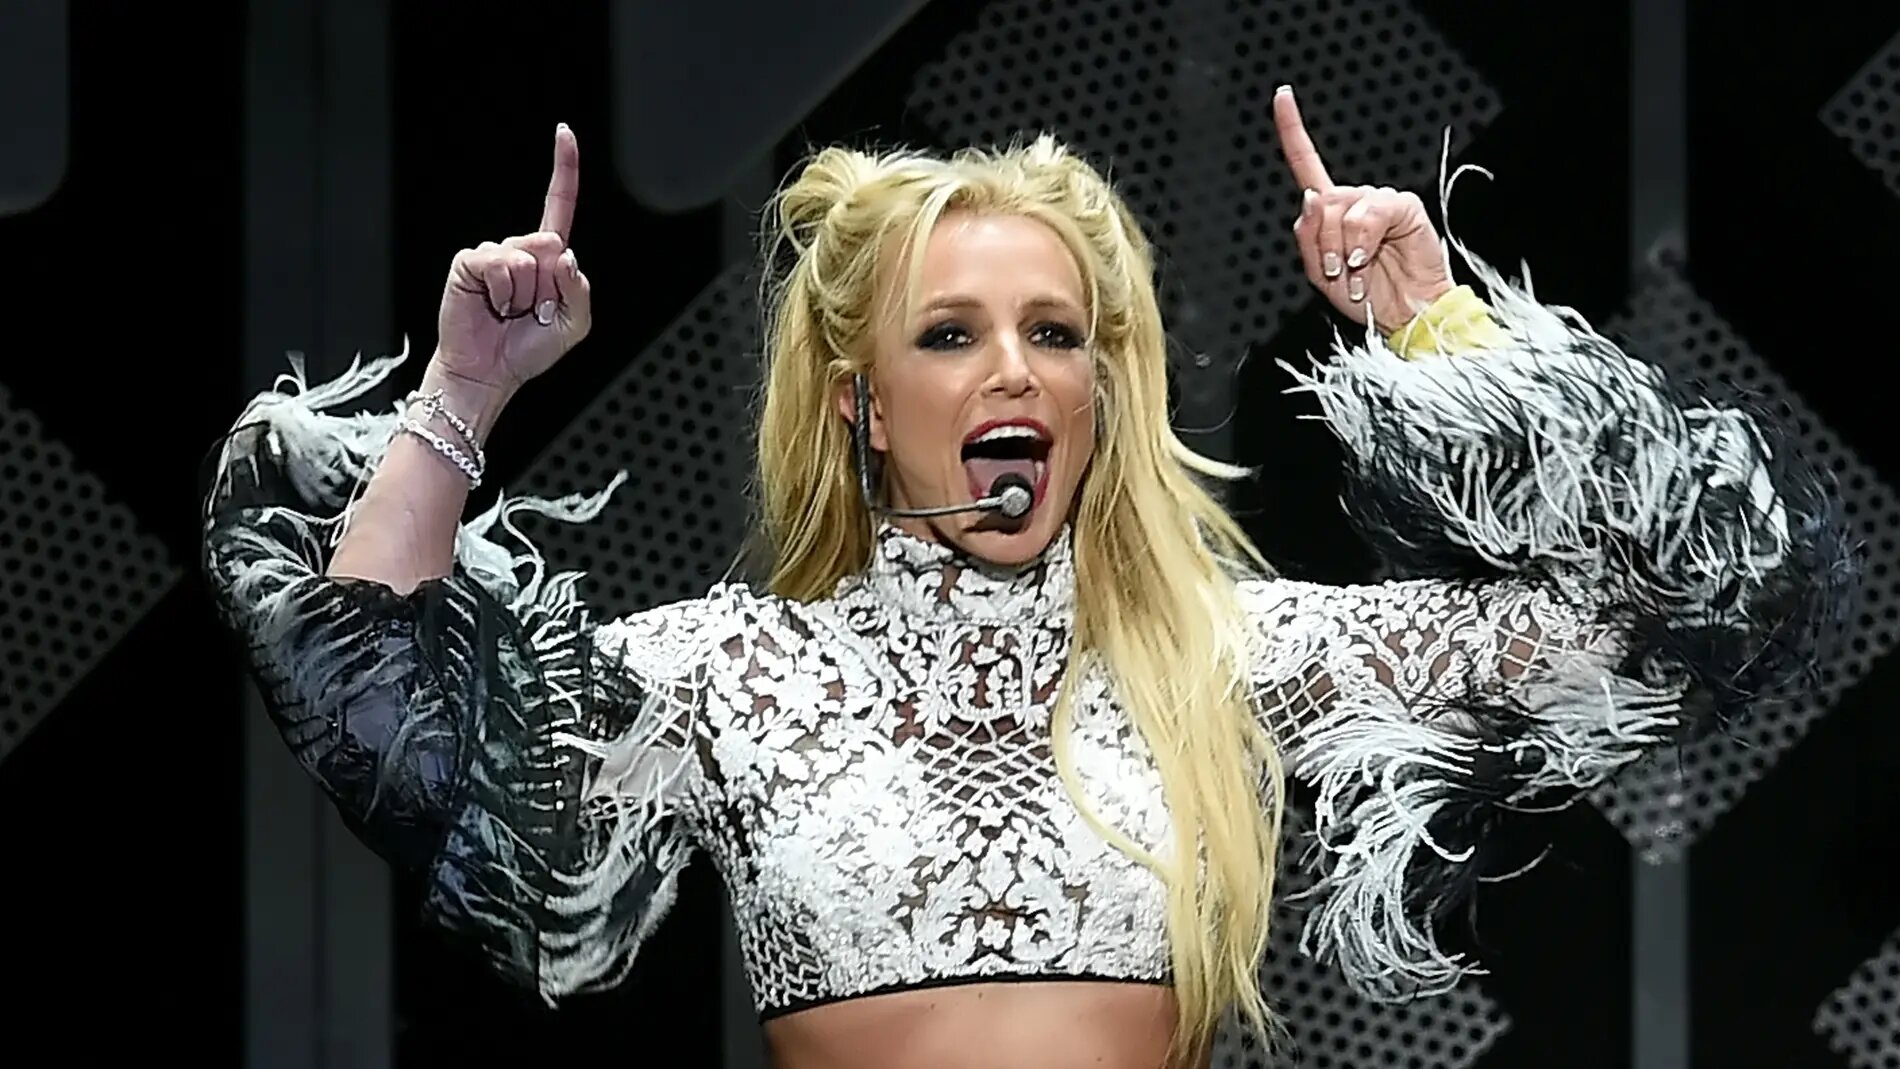 #FreeBritney: James Spears ha sido oficialmente suspendido de la tutela de su hija Britney Spears